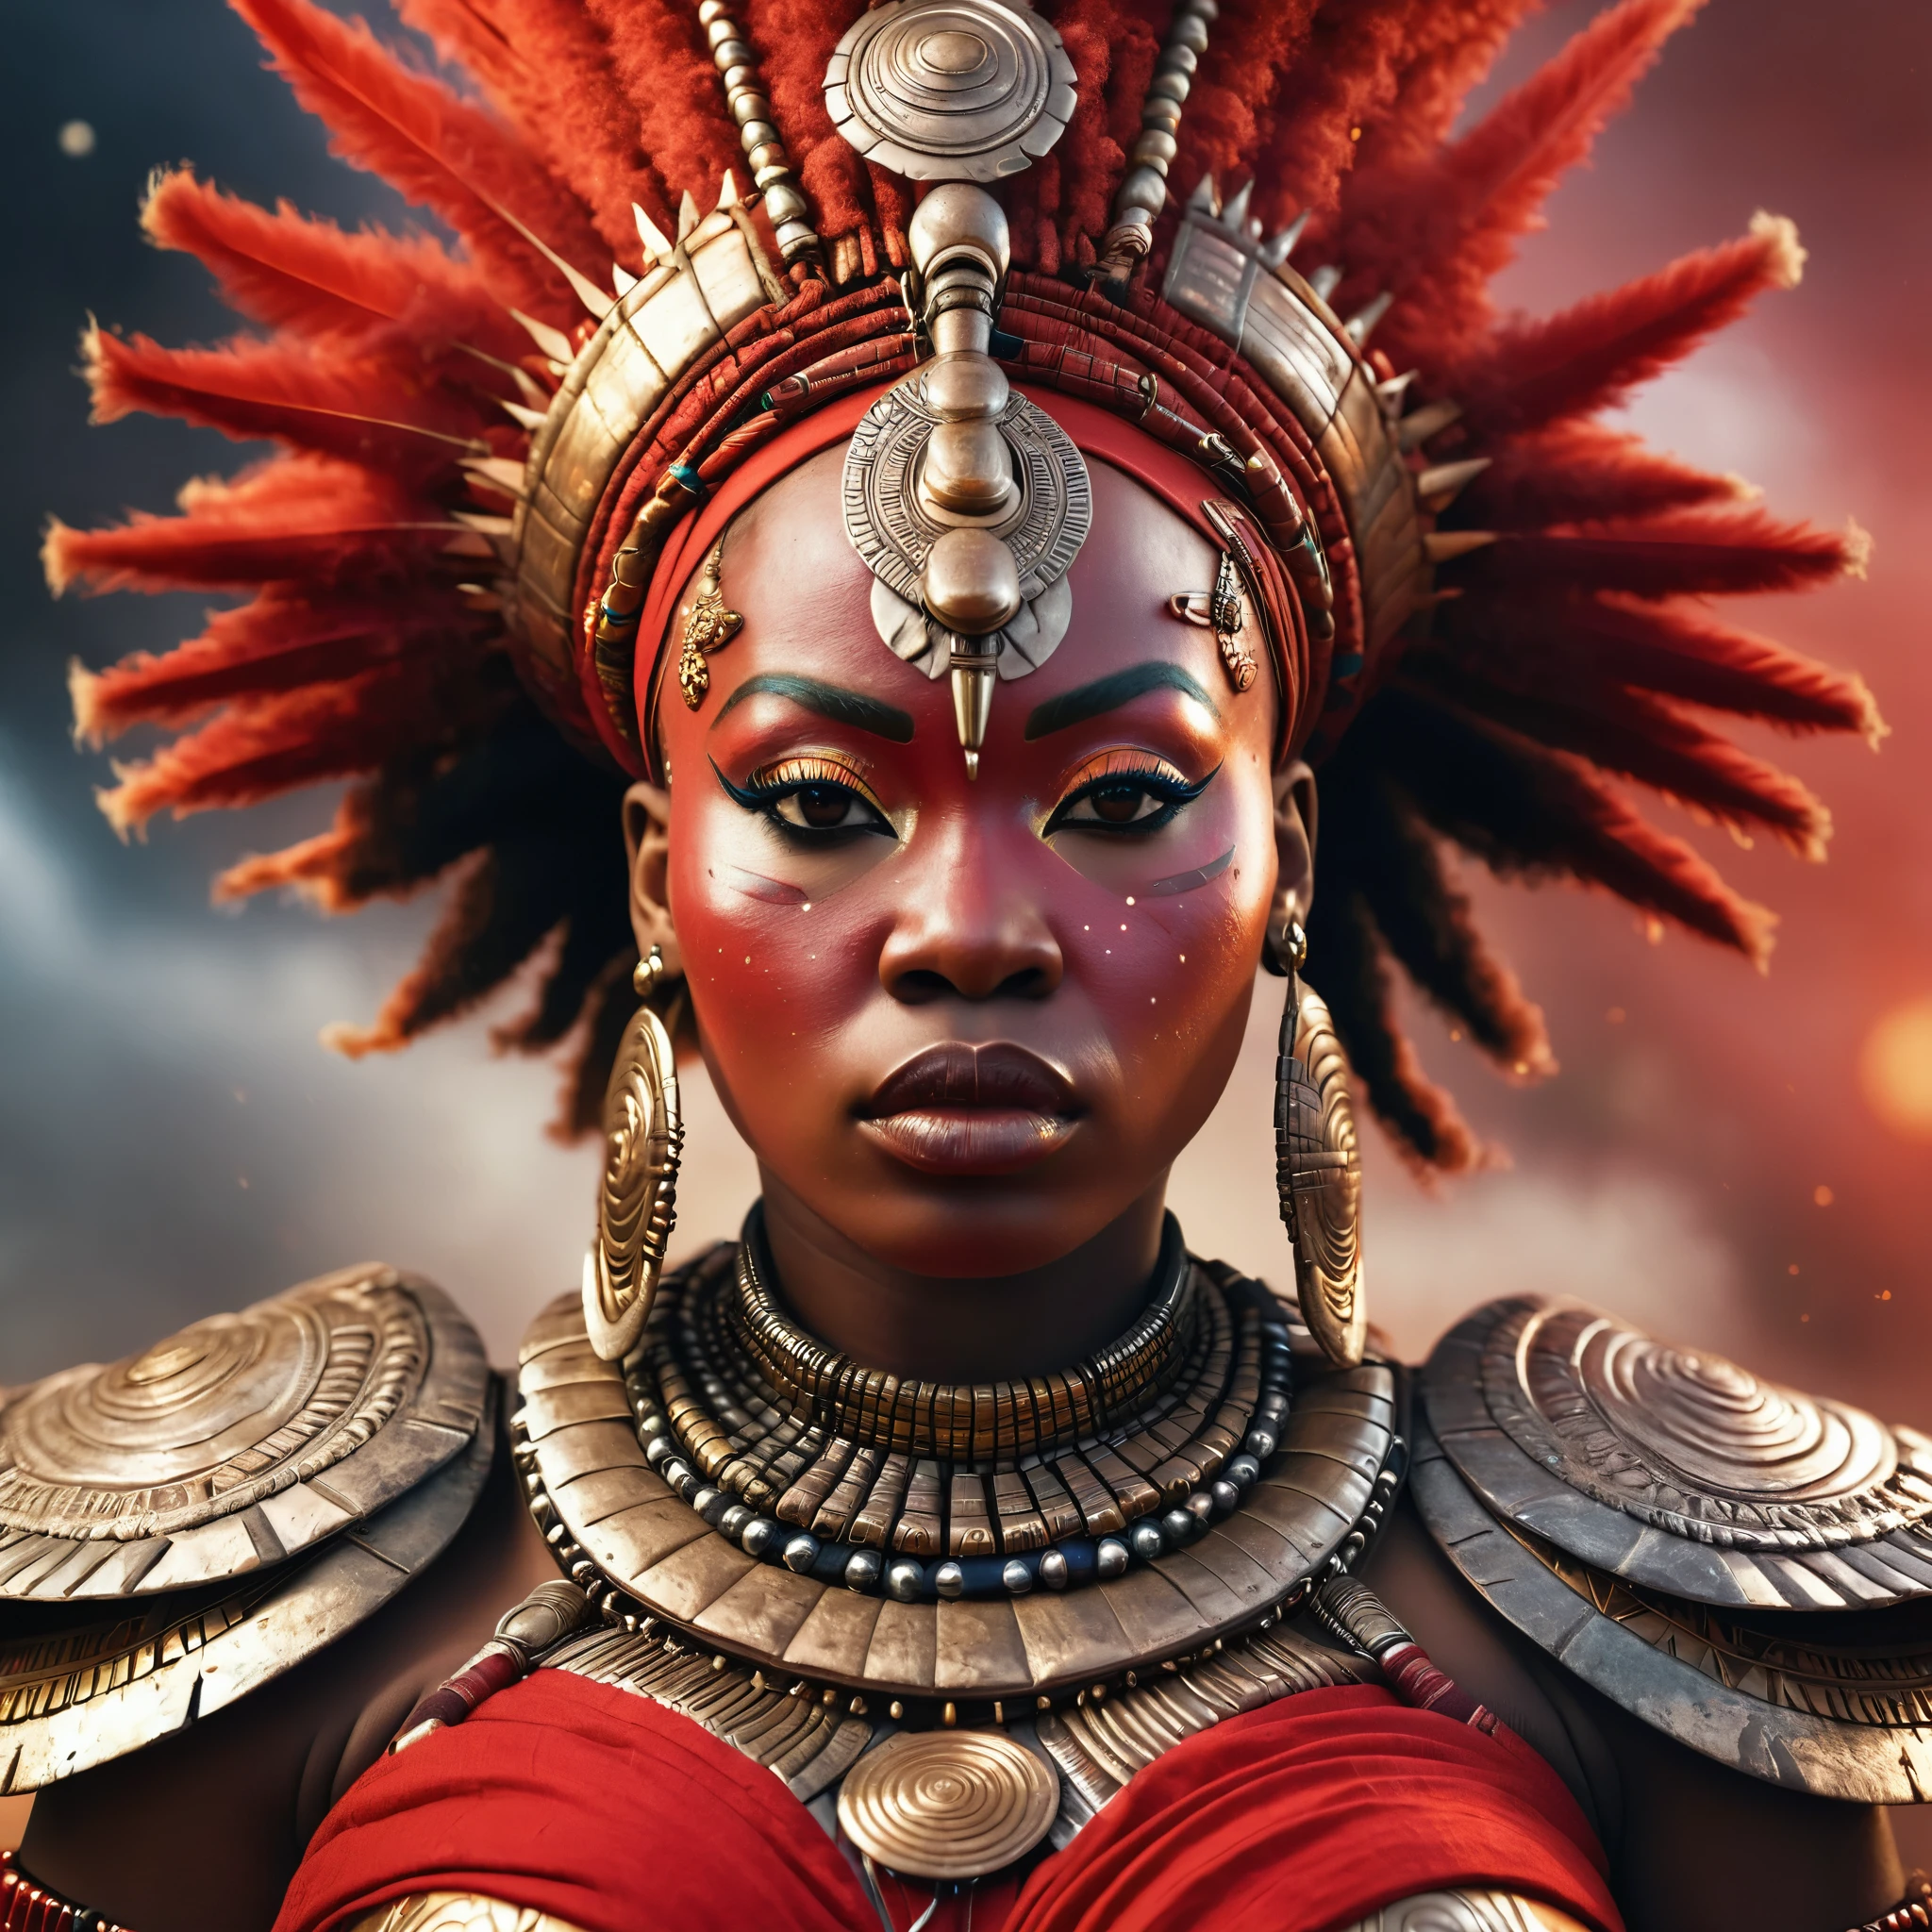 舊復古肖像, 身穿紅色非洲武士服裝的非洲女神, 女王, 胖的, 厚重的身軀, 逼真的, 戲劇性的燈光, 脸部细节非常丰富, 高細節, 廣角, 超品質, 8K, 複雜的細節, 非洲未來主義時尚, 賽博朋克, 奧里沙, 非洲神, 餘燼顆粒, 雷粒子